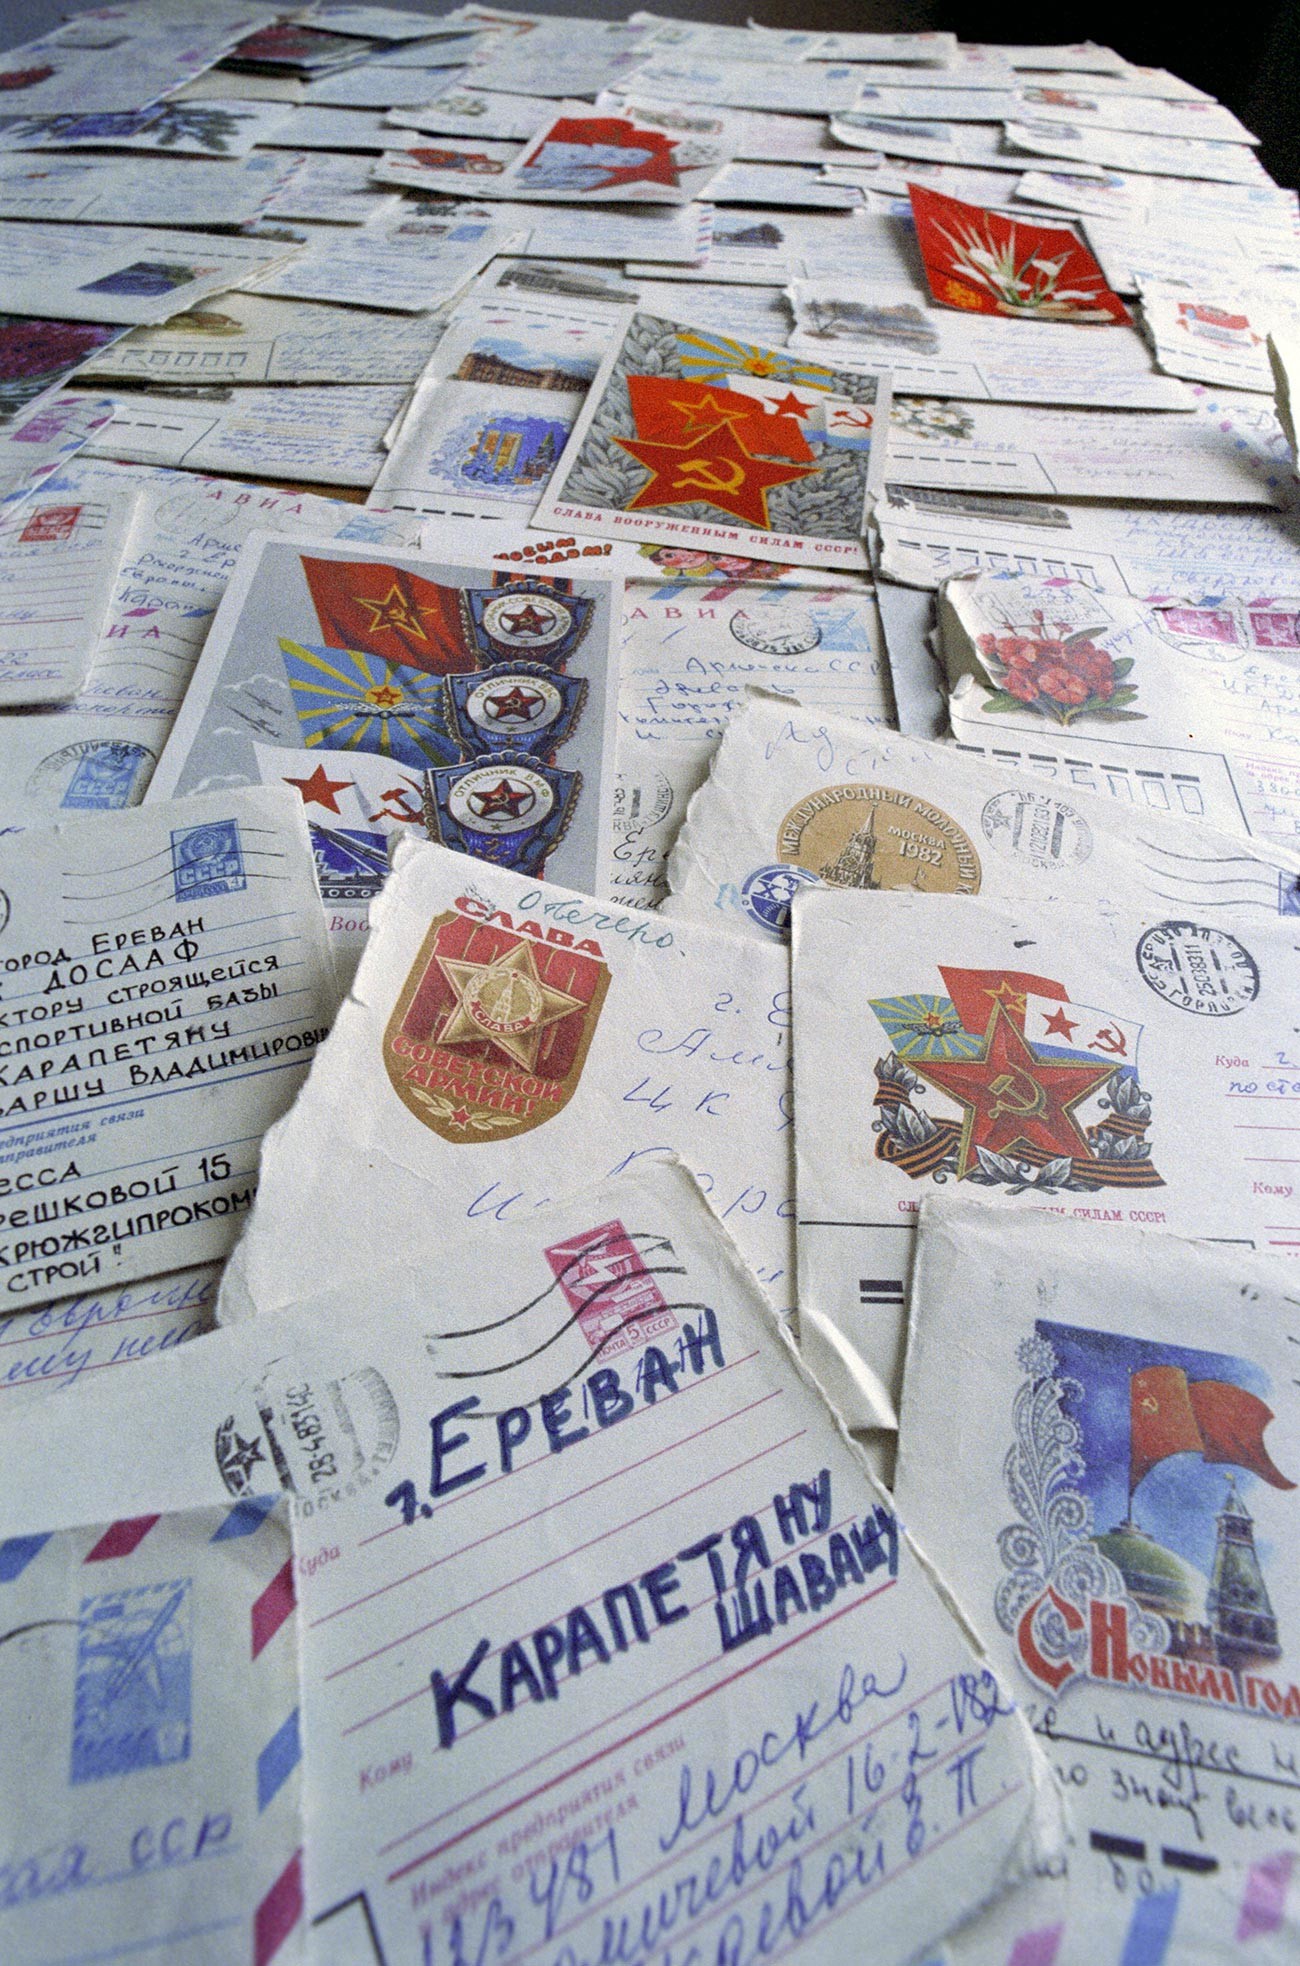 Lettres adressées à Karapetyan suite à ses exploits